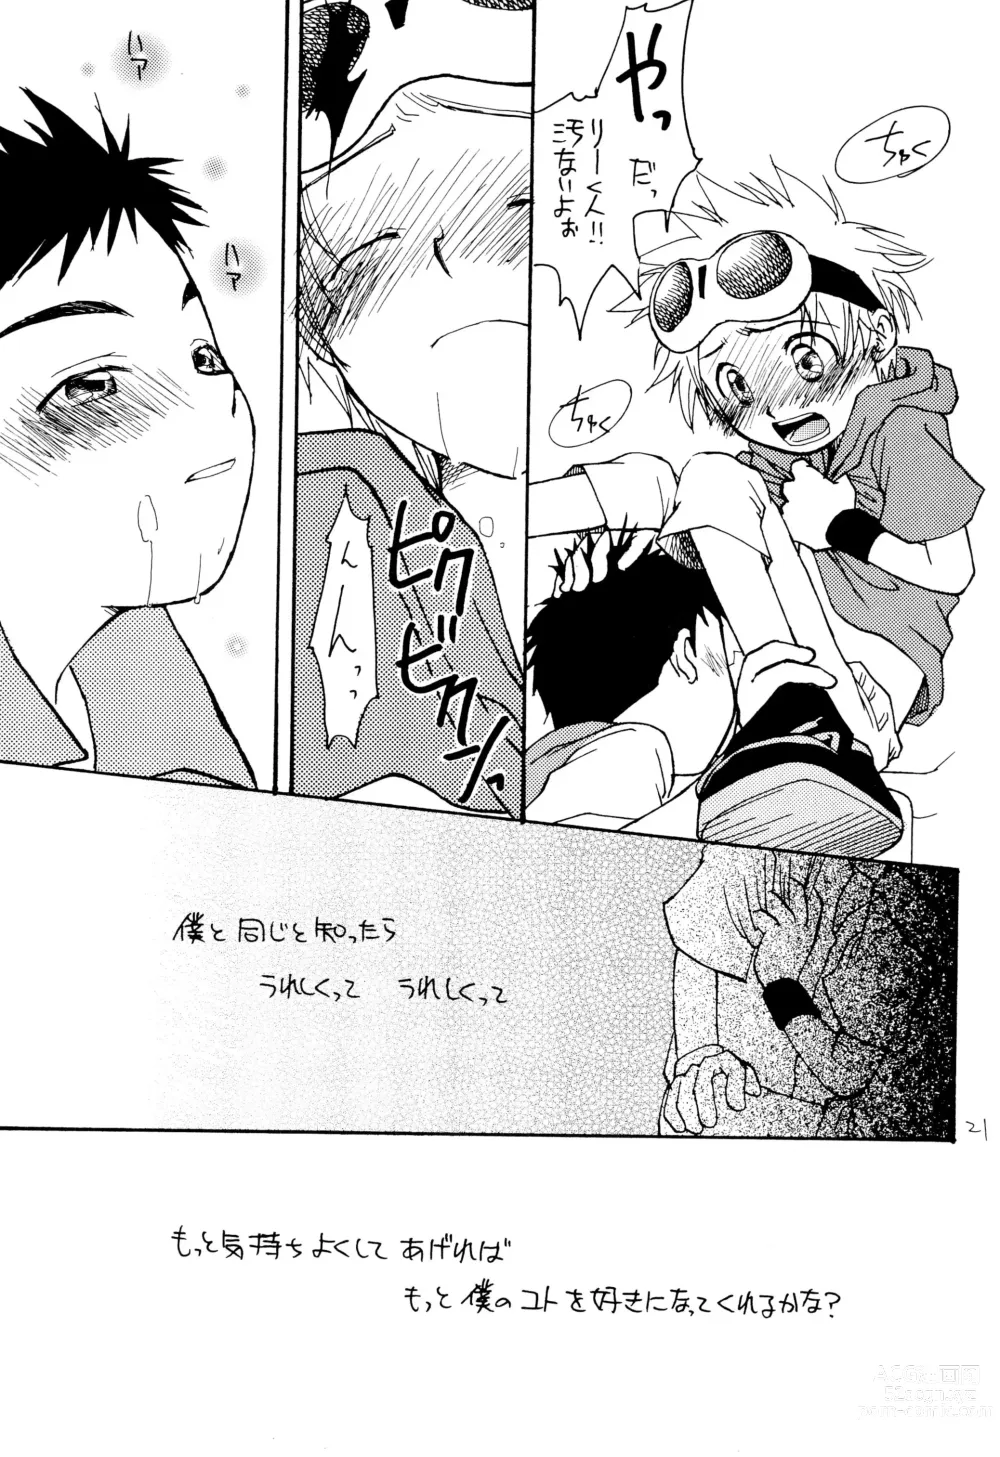 Page 23 of doujinshi LiTaka 2